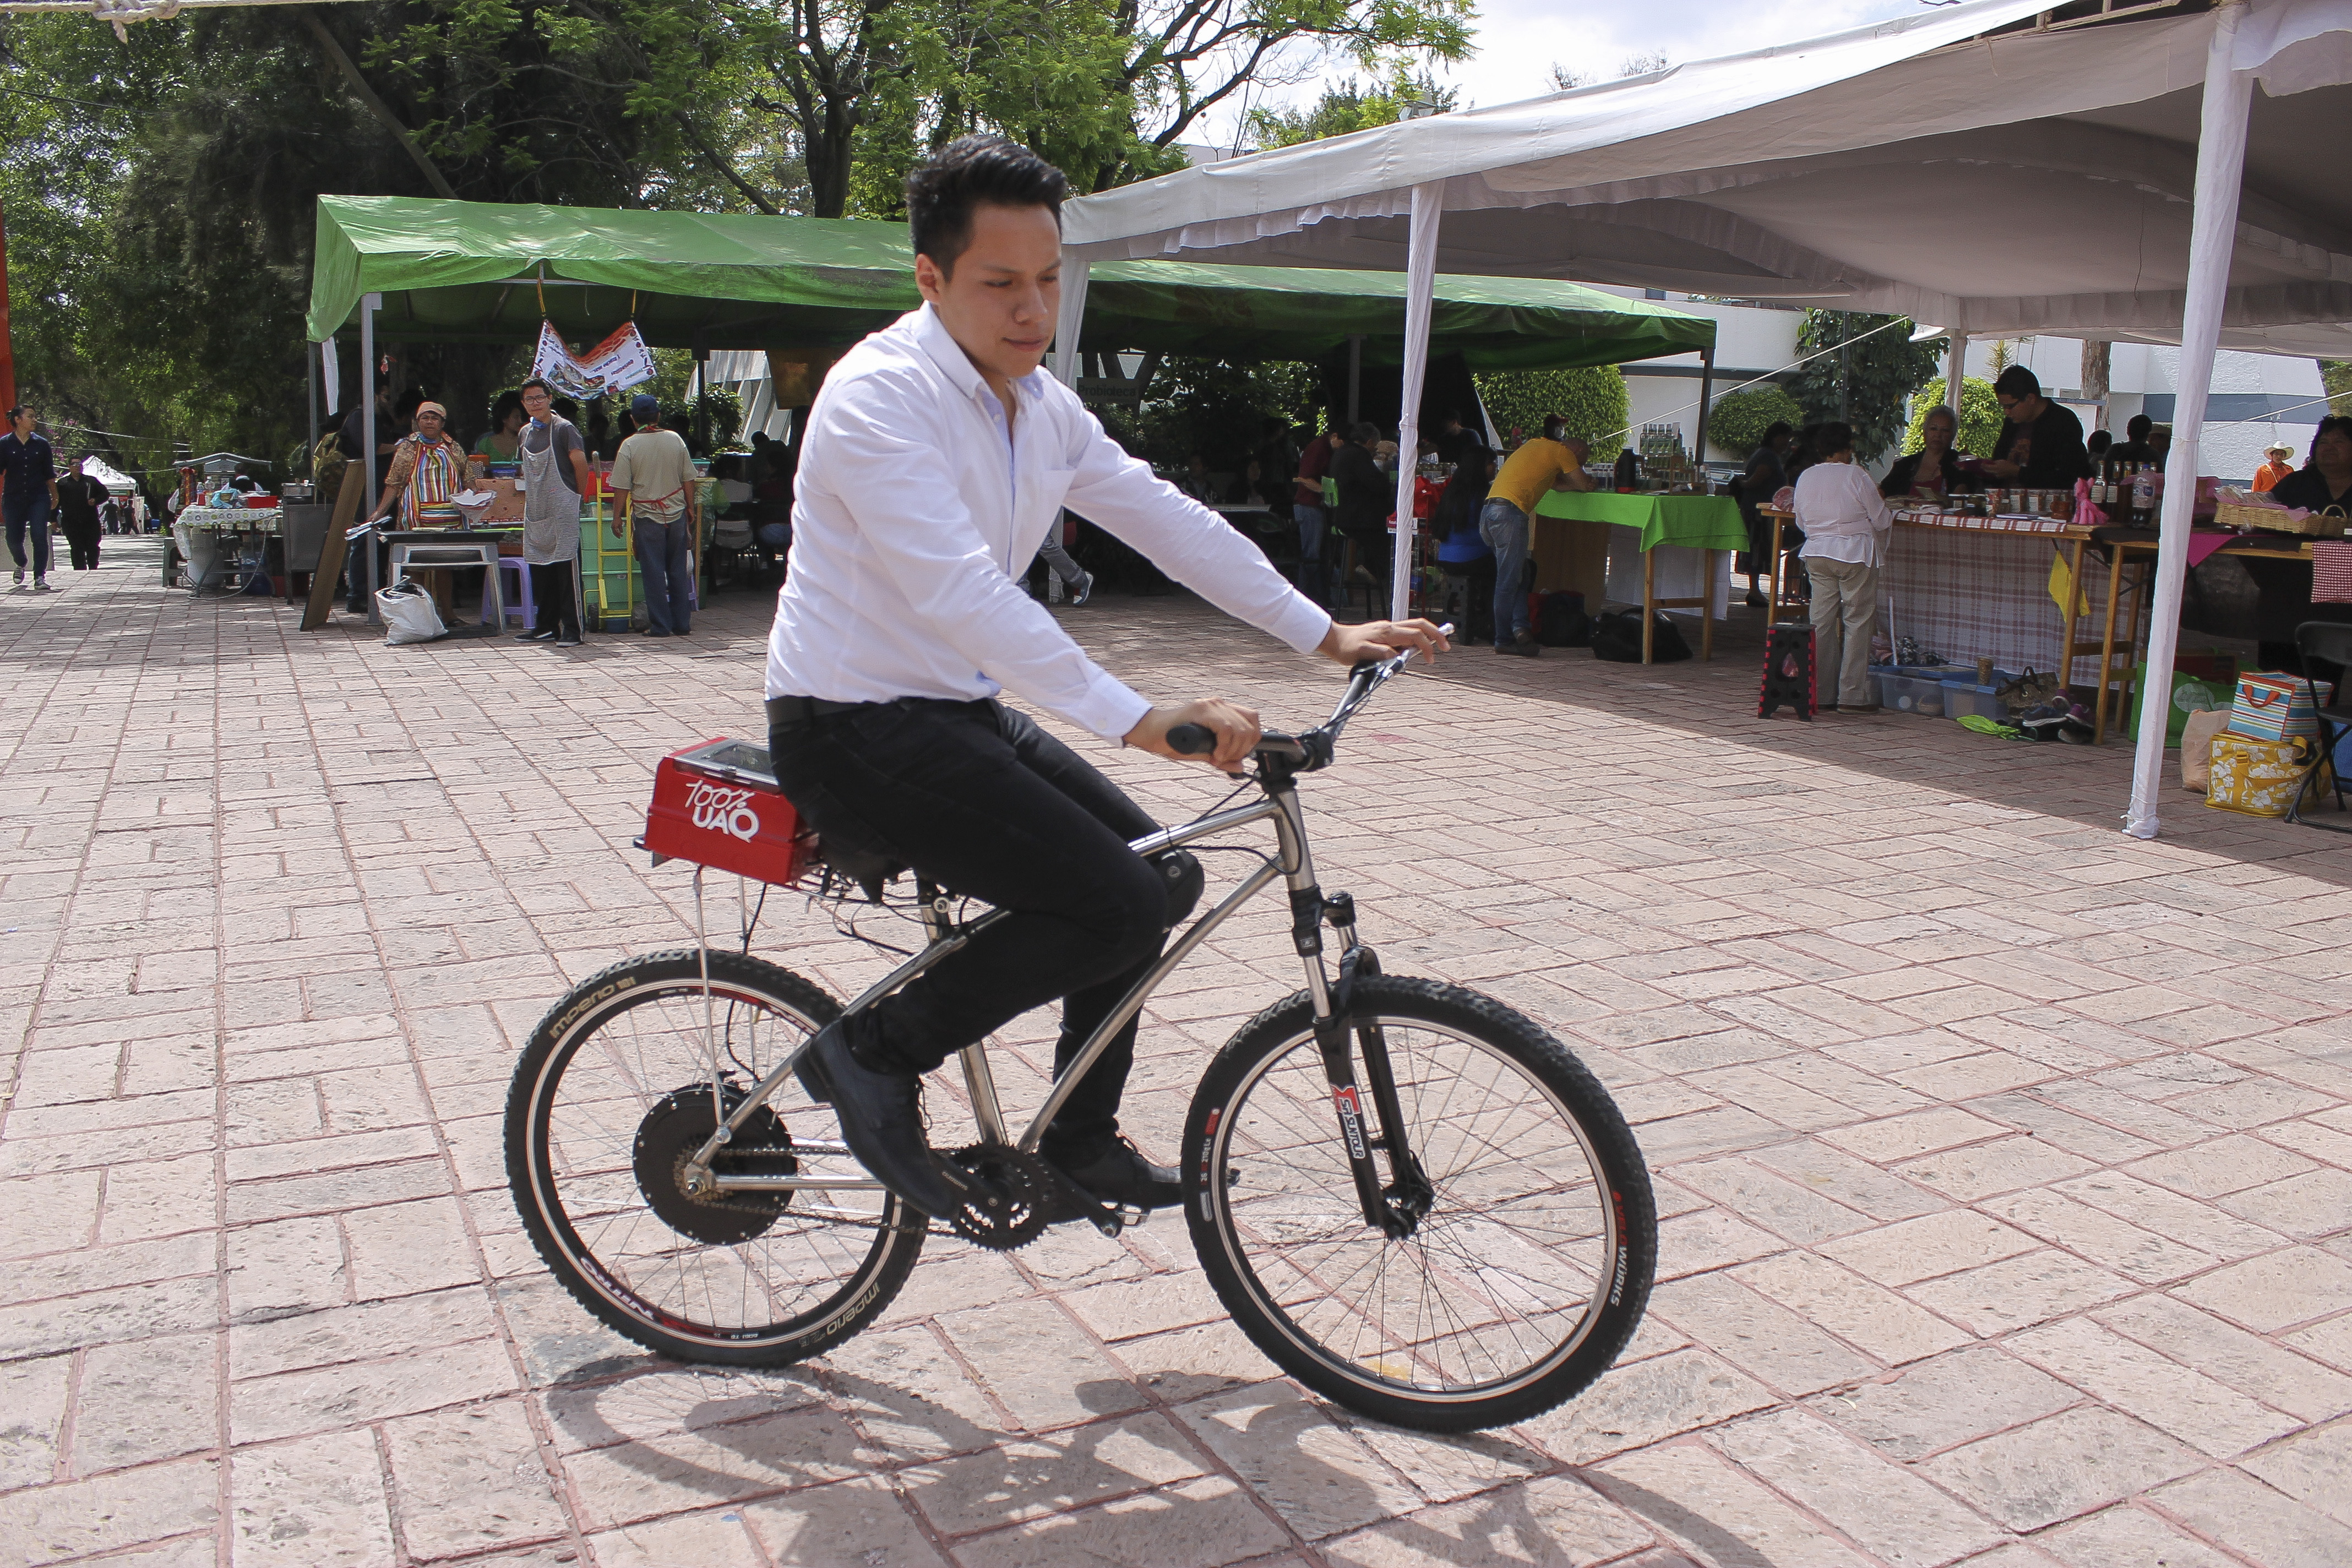  BiciUAQ podría ser tomada en cuenta para proyectos en el futuro, afirma Marcos Aguilar